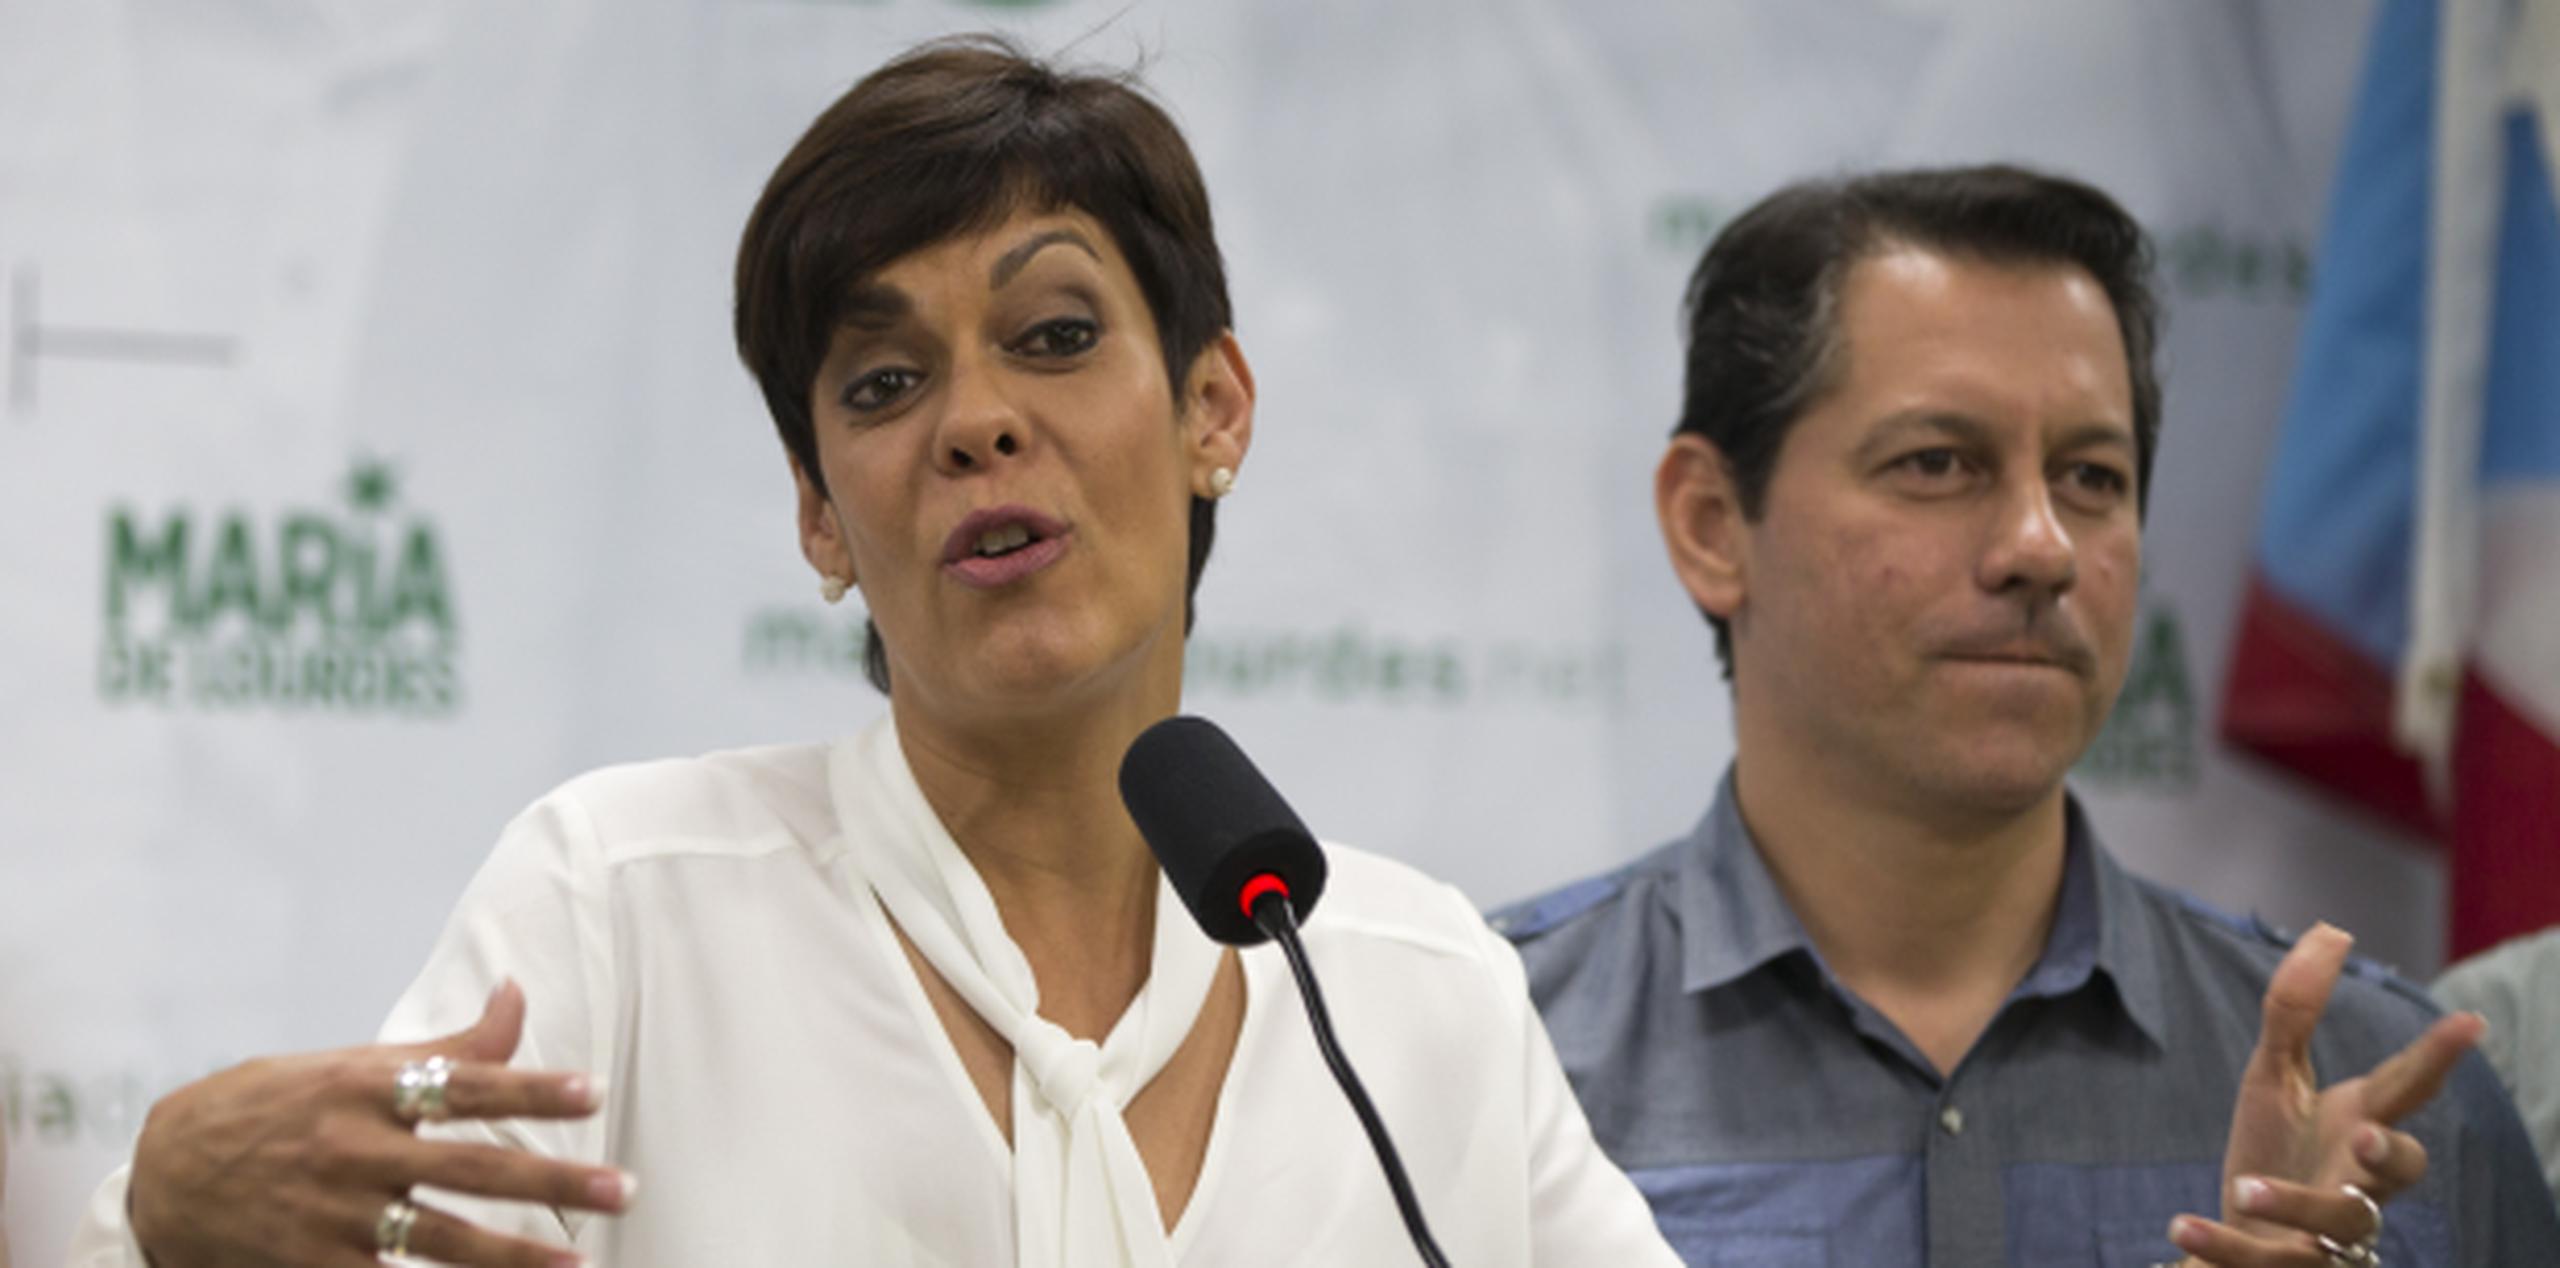 María de Lourdes Santiago y Juan Dalmau en la sede del Partido Independentista Puertorriqueño. (jorge.ramirez@gfrmedia.com)